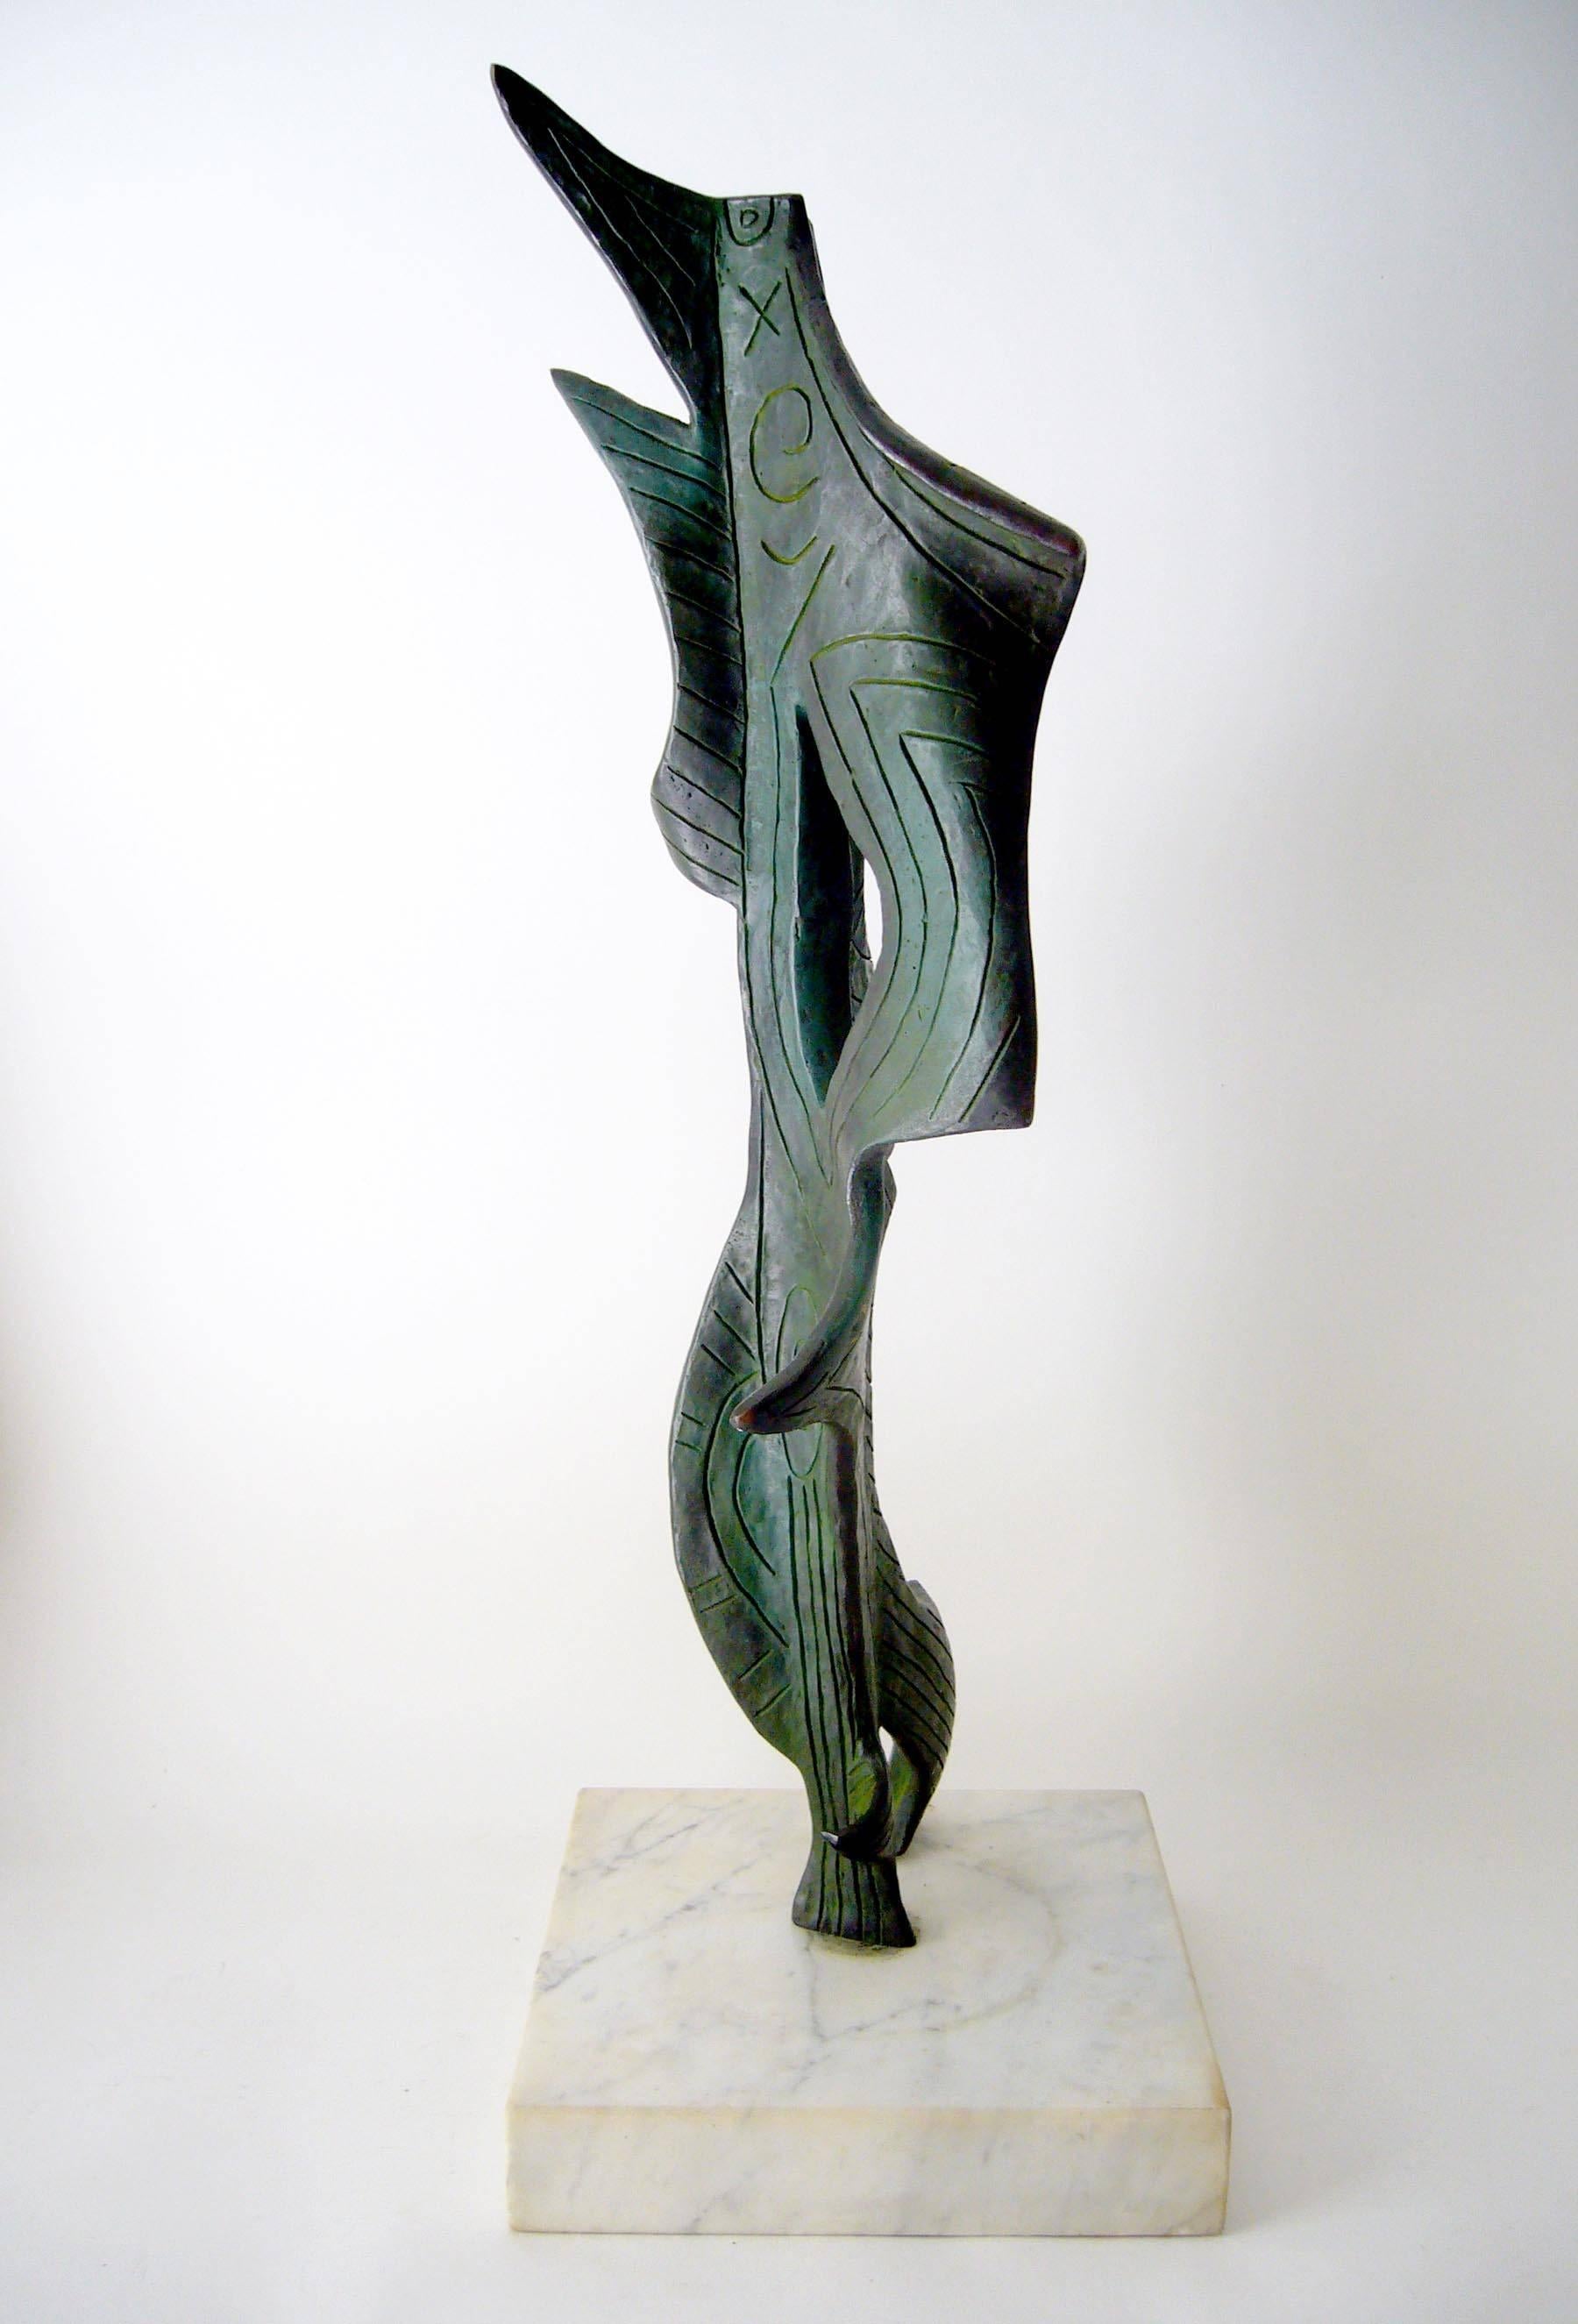 Großformatige Skulptur im Stil des Meisters Joan Miró, die an ein abstraktes Unterwasserlebewesen erinnert.  Die Materialien sind patinierte Bronze auf einem weißen Marmorsockel. Die Skulptur misst 29